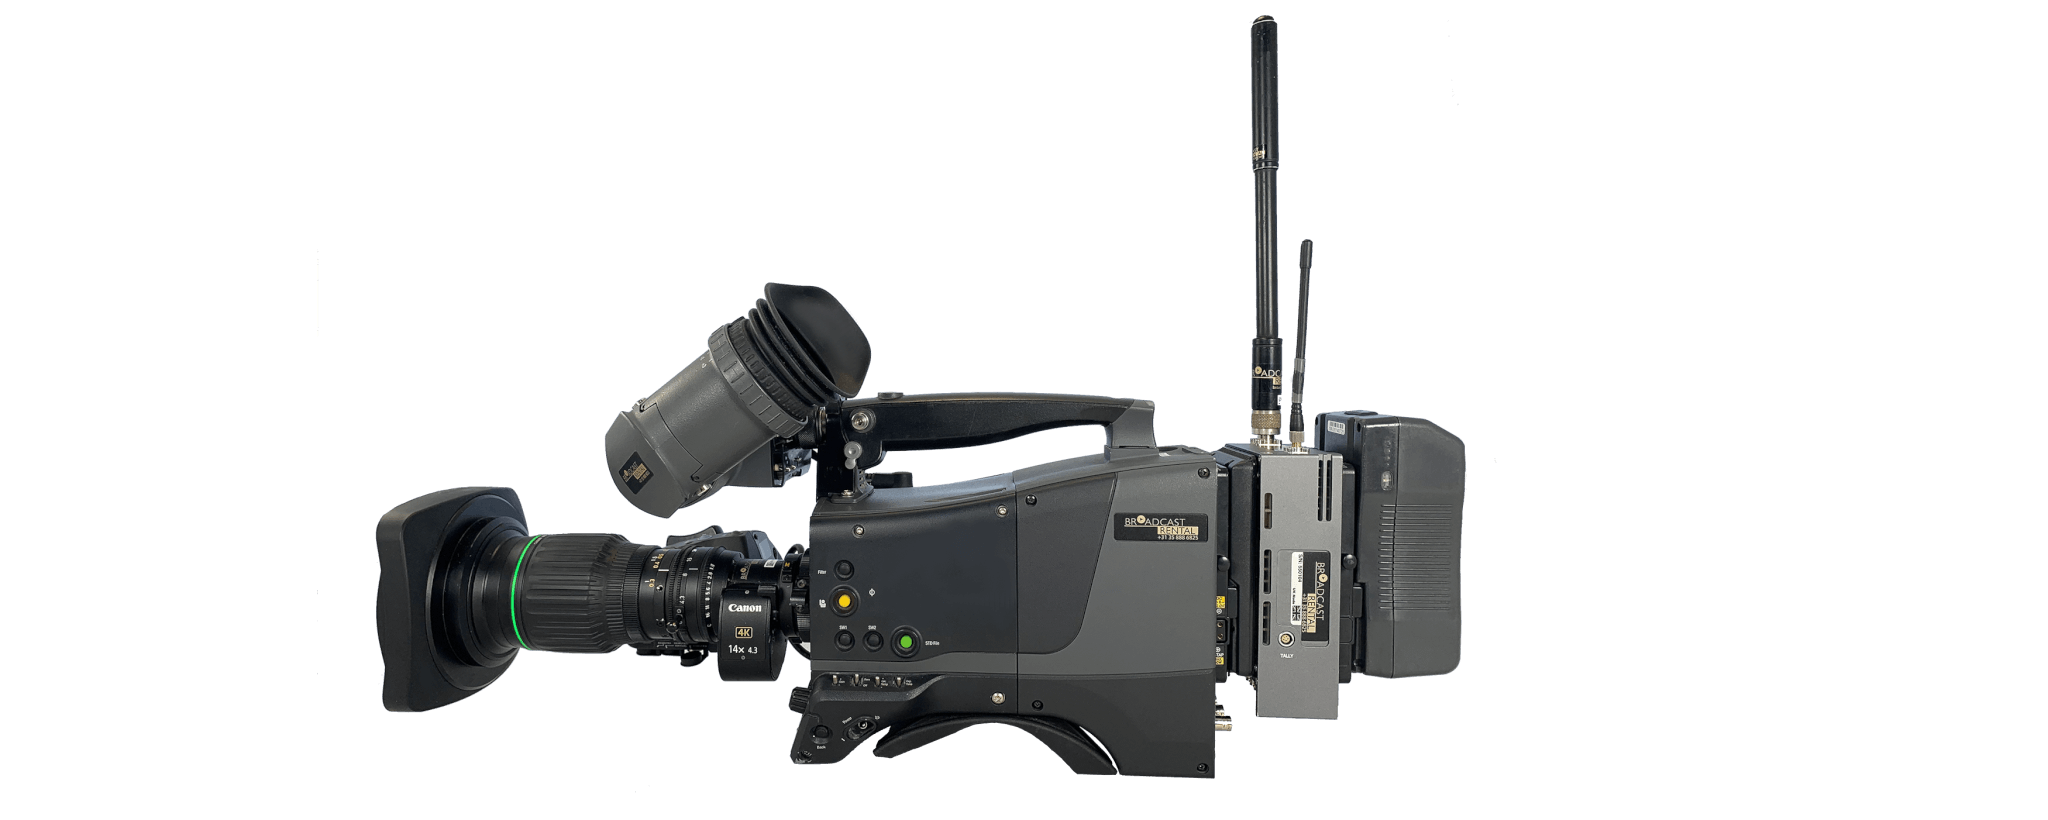 Grass Valley LDX80 Elite RF camera body